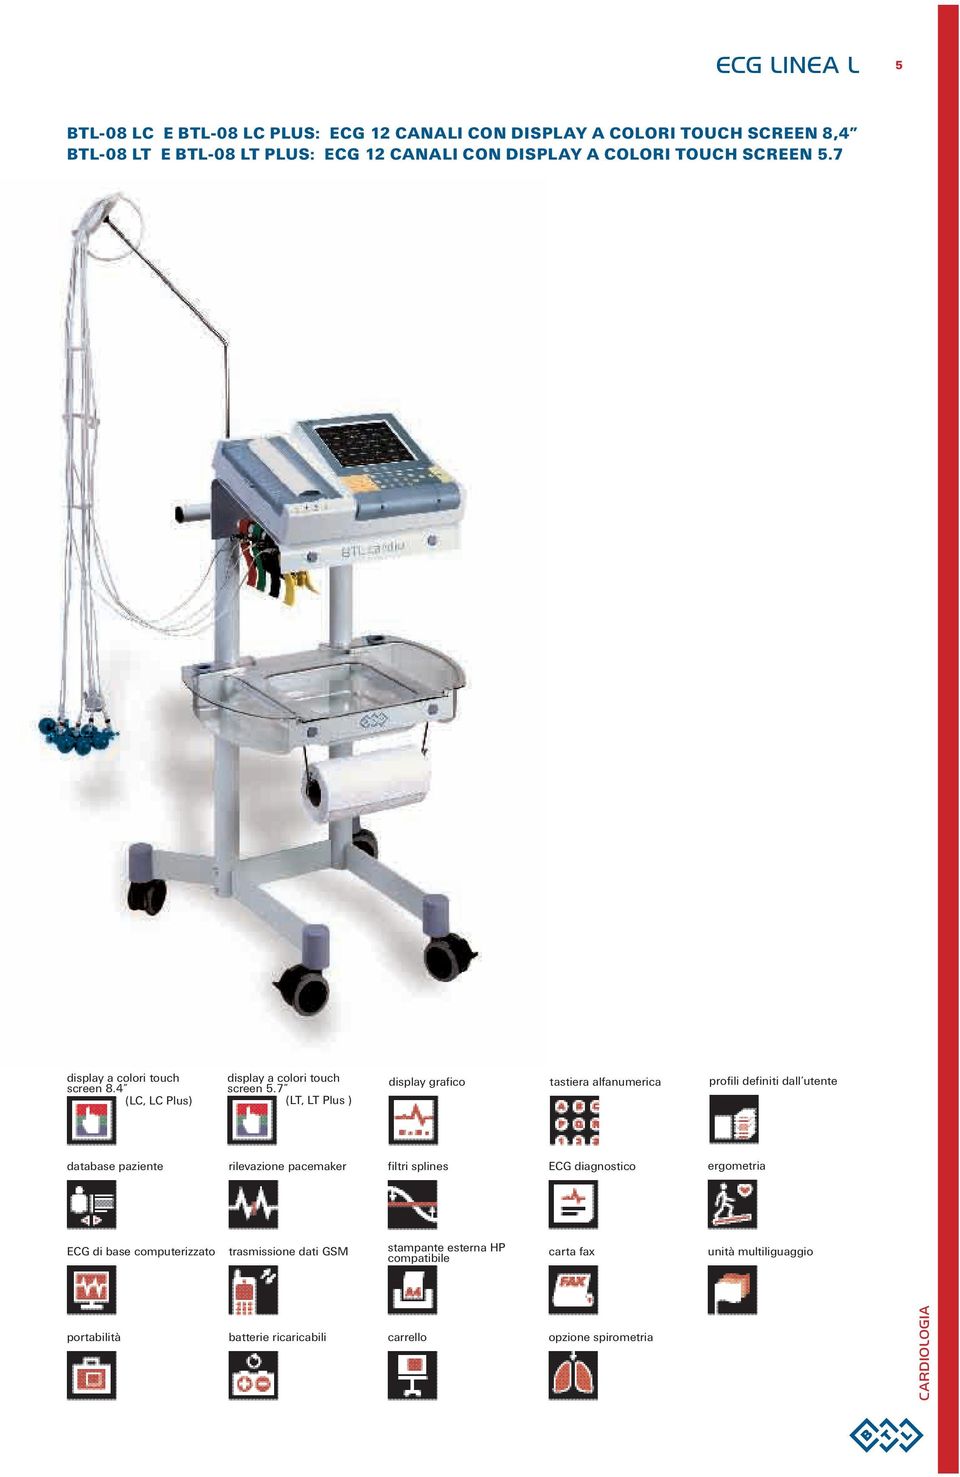 7 (LT, LT Plus ) display grafico tastiera alfanumerica profili definiti dall utente database paziente rilevazione pacemaker filtri splines ECG diagnostico